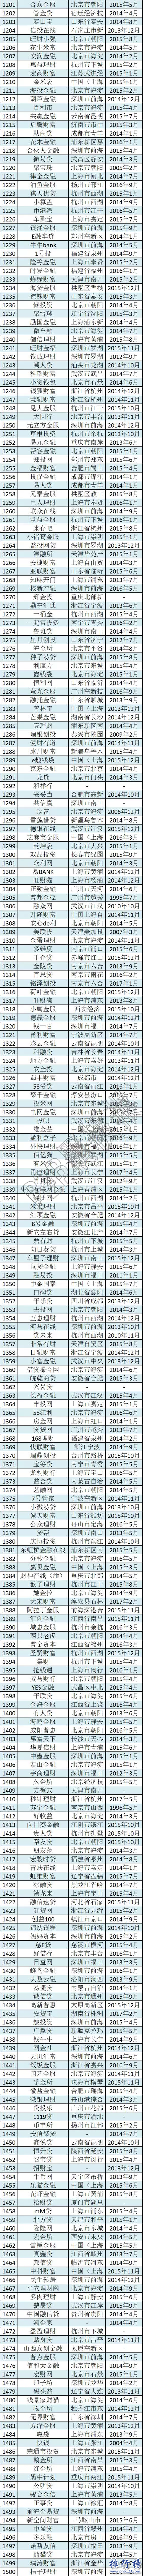 最全2017中國P2P網貸平台名單(1854家完整版)